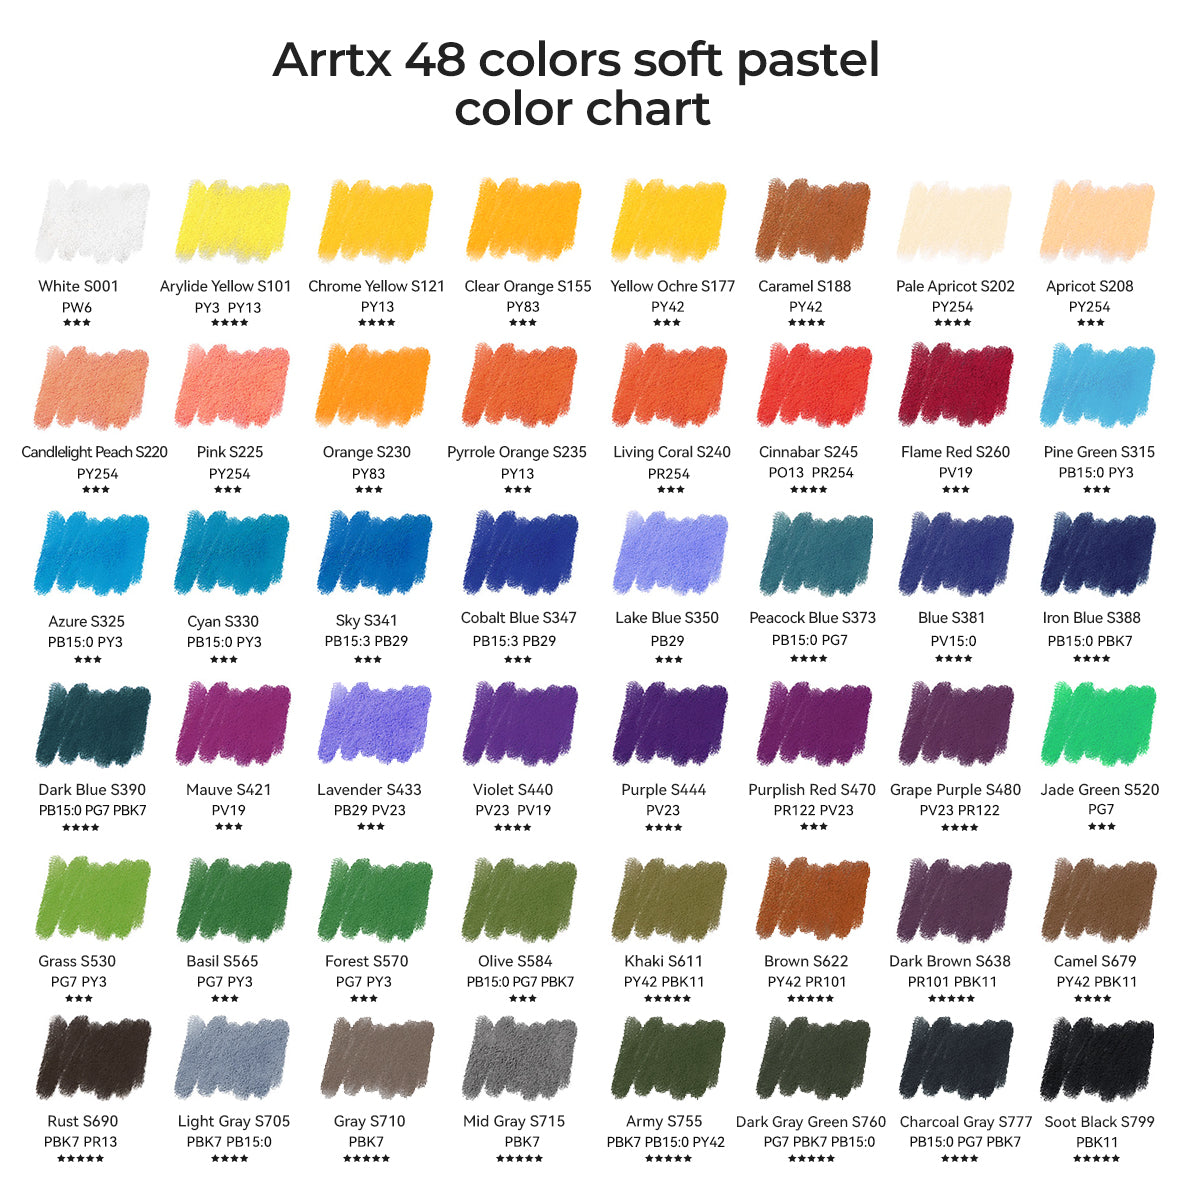 6 Packs: 48 ct. (288 total) Soft Pastels Colors by Artist's Loft